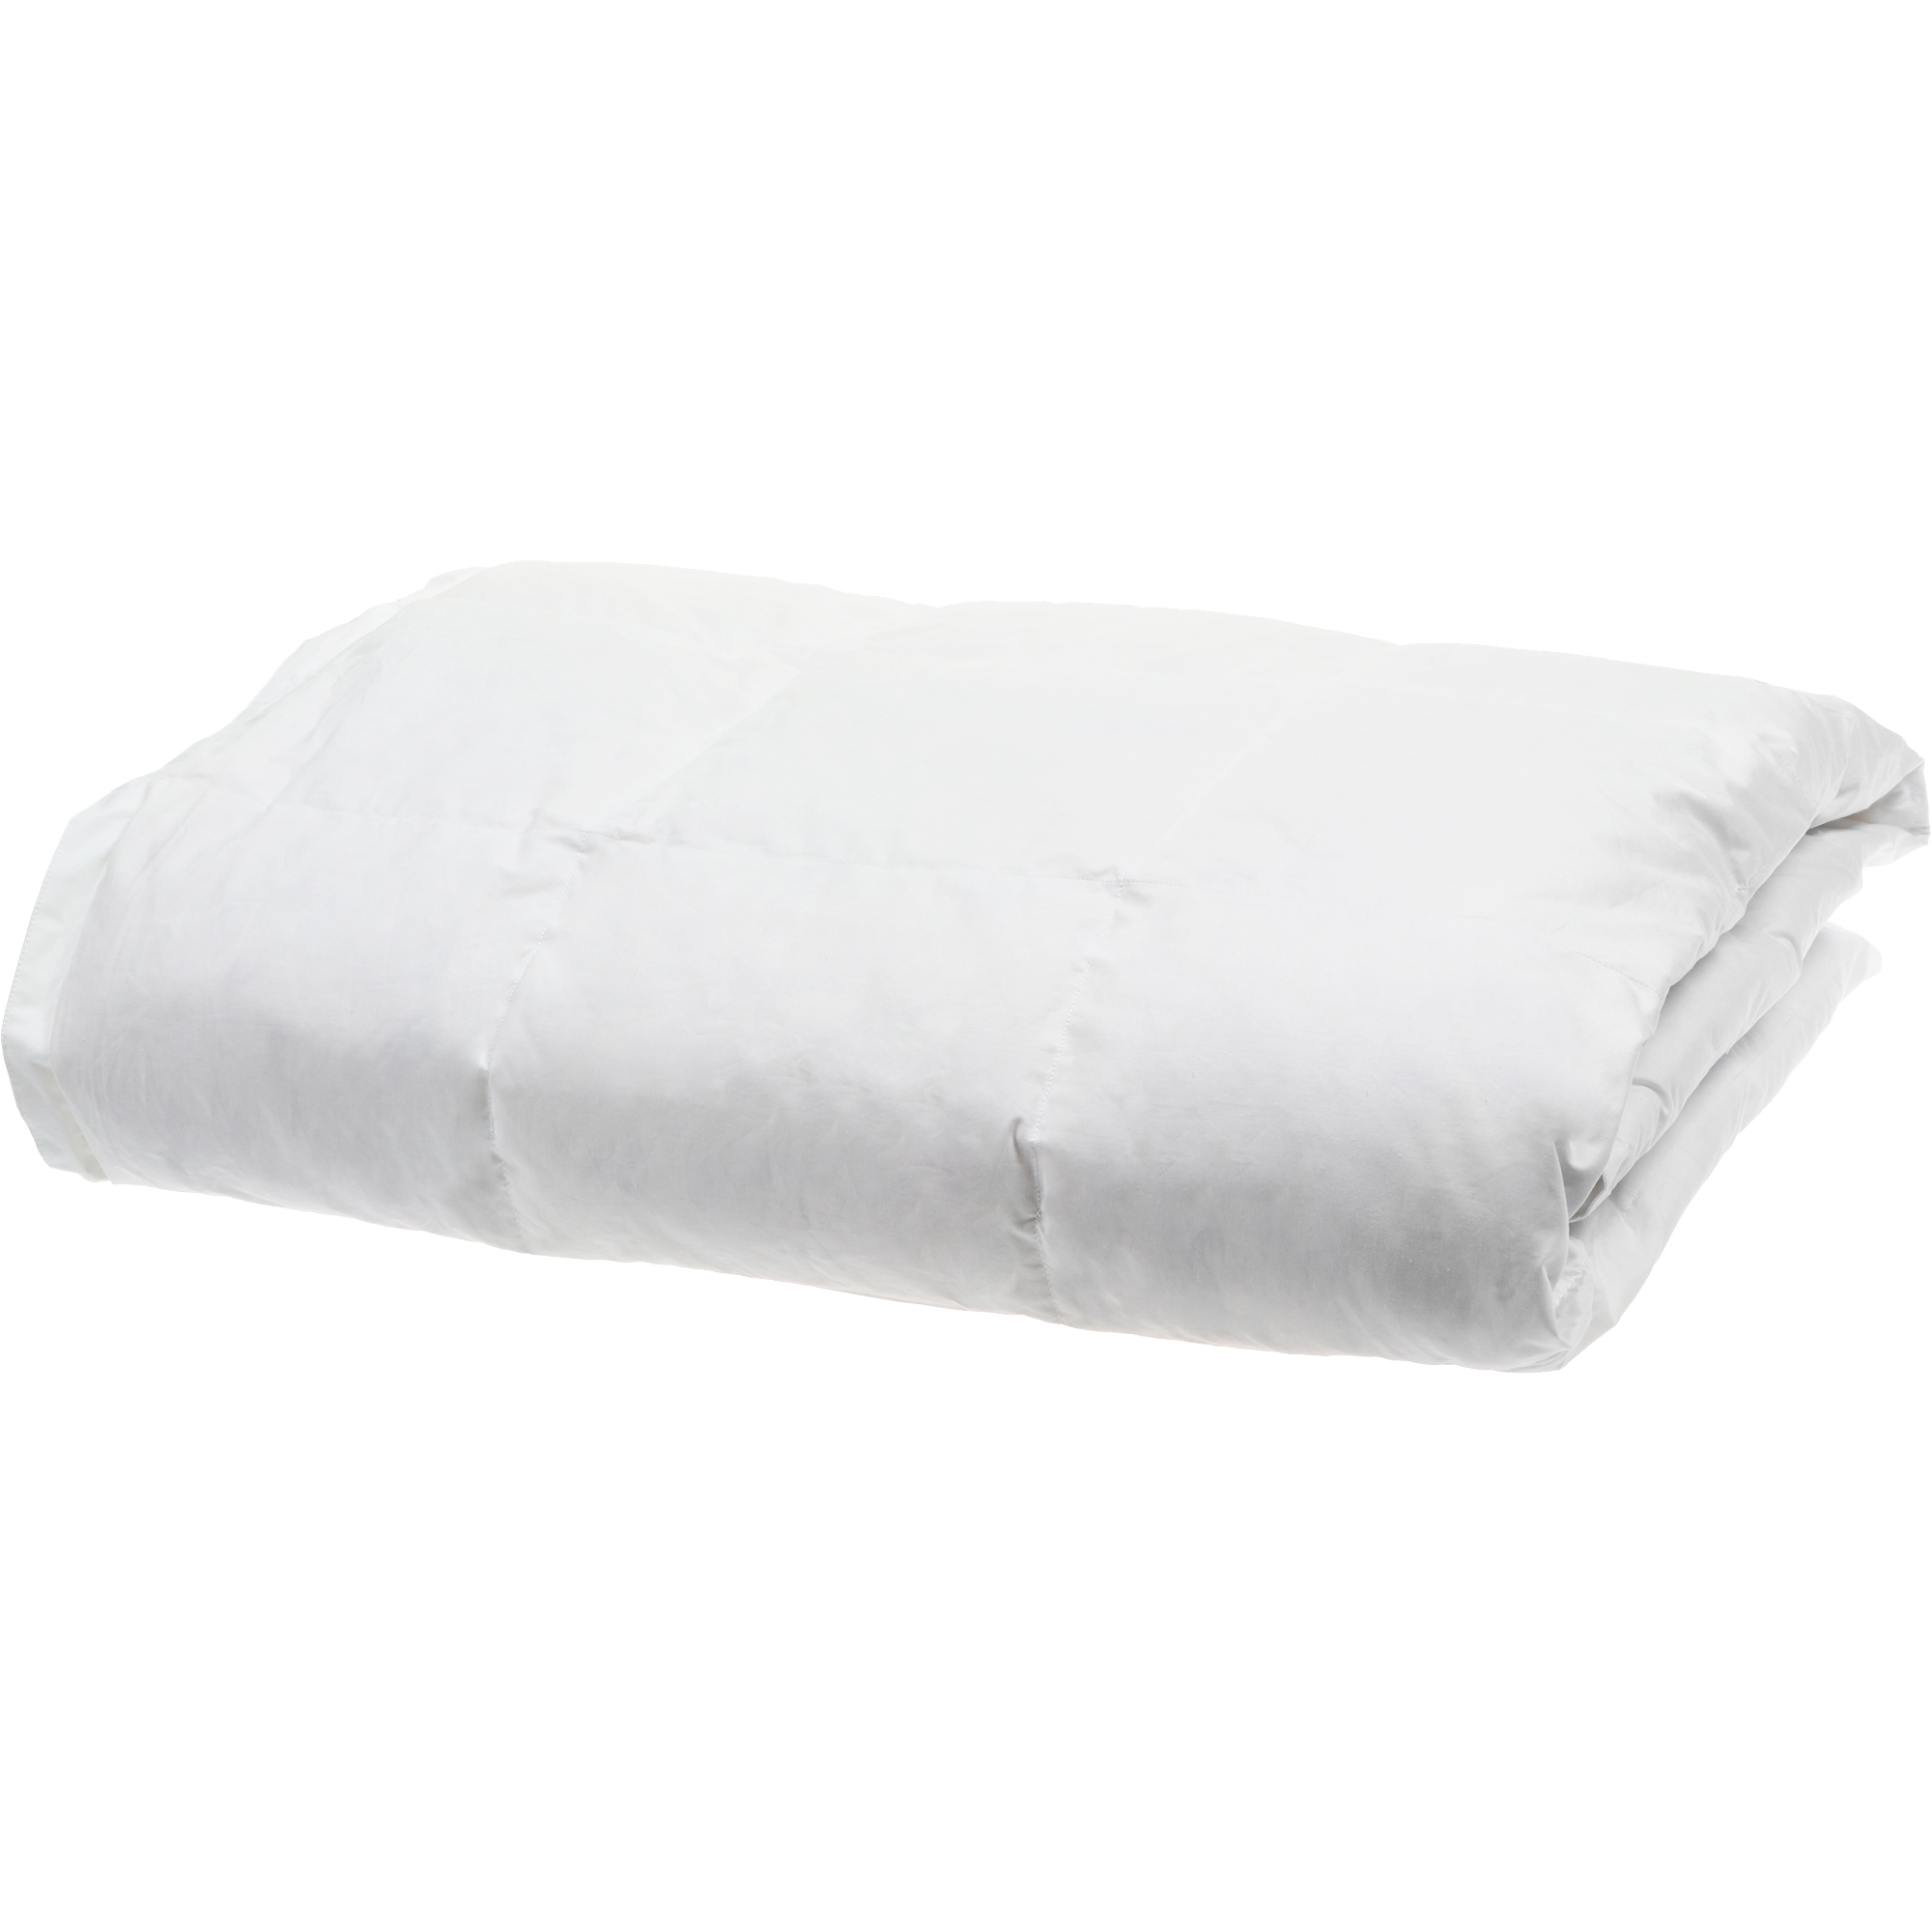 Одеяло Daunex Badia Light белое 220х240 см одеяло daunex badia warm 220x240